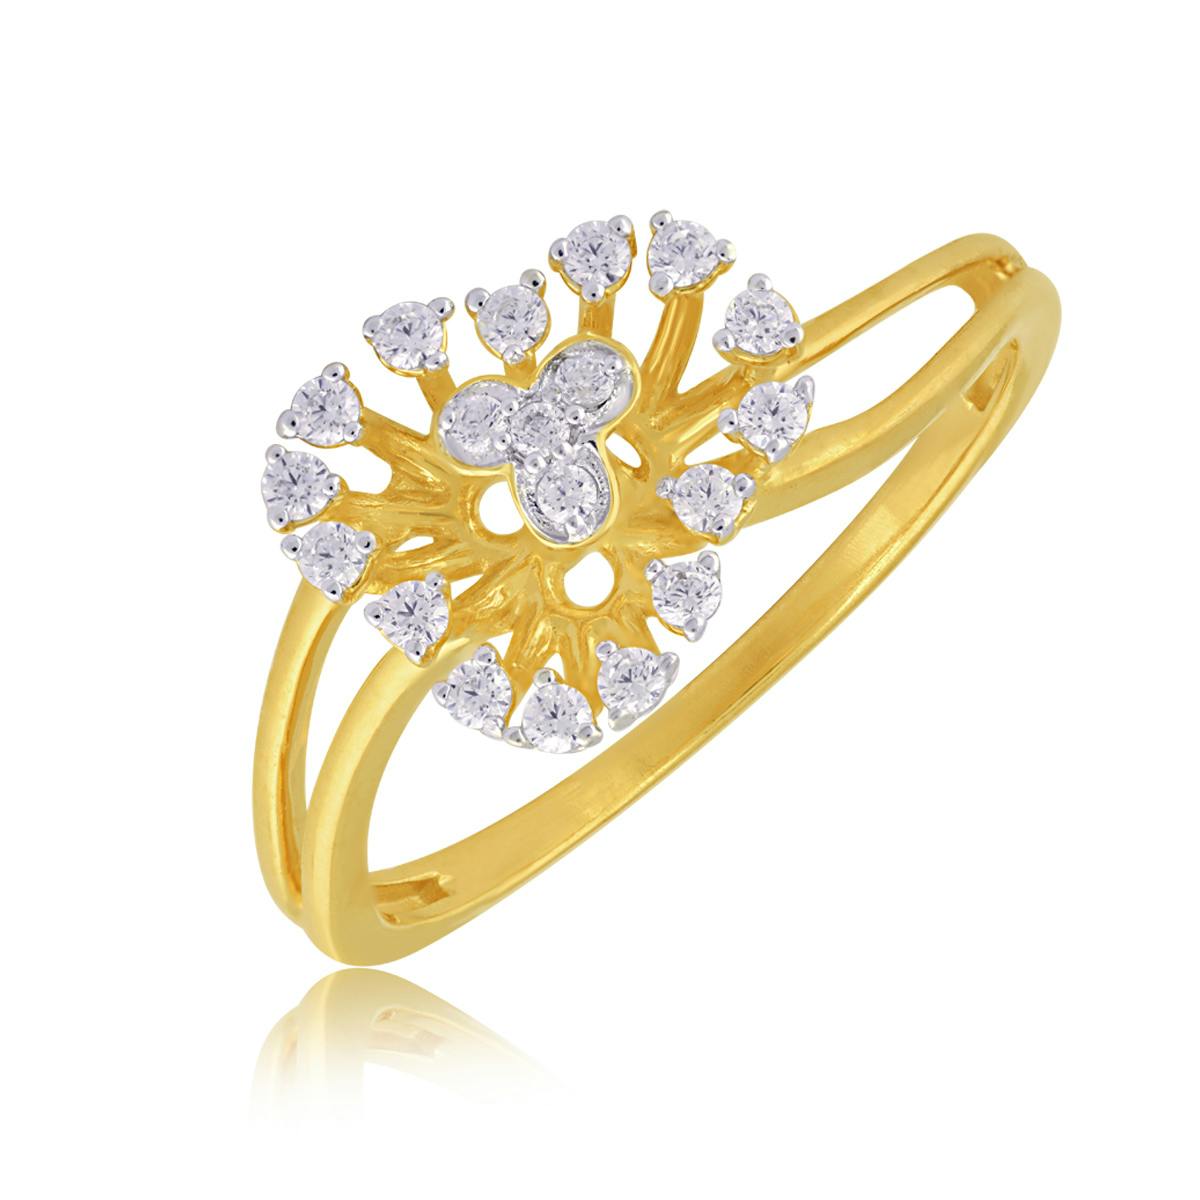 Awe-inspiring diamond ring